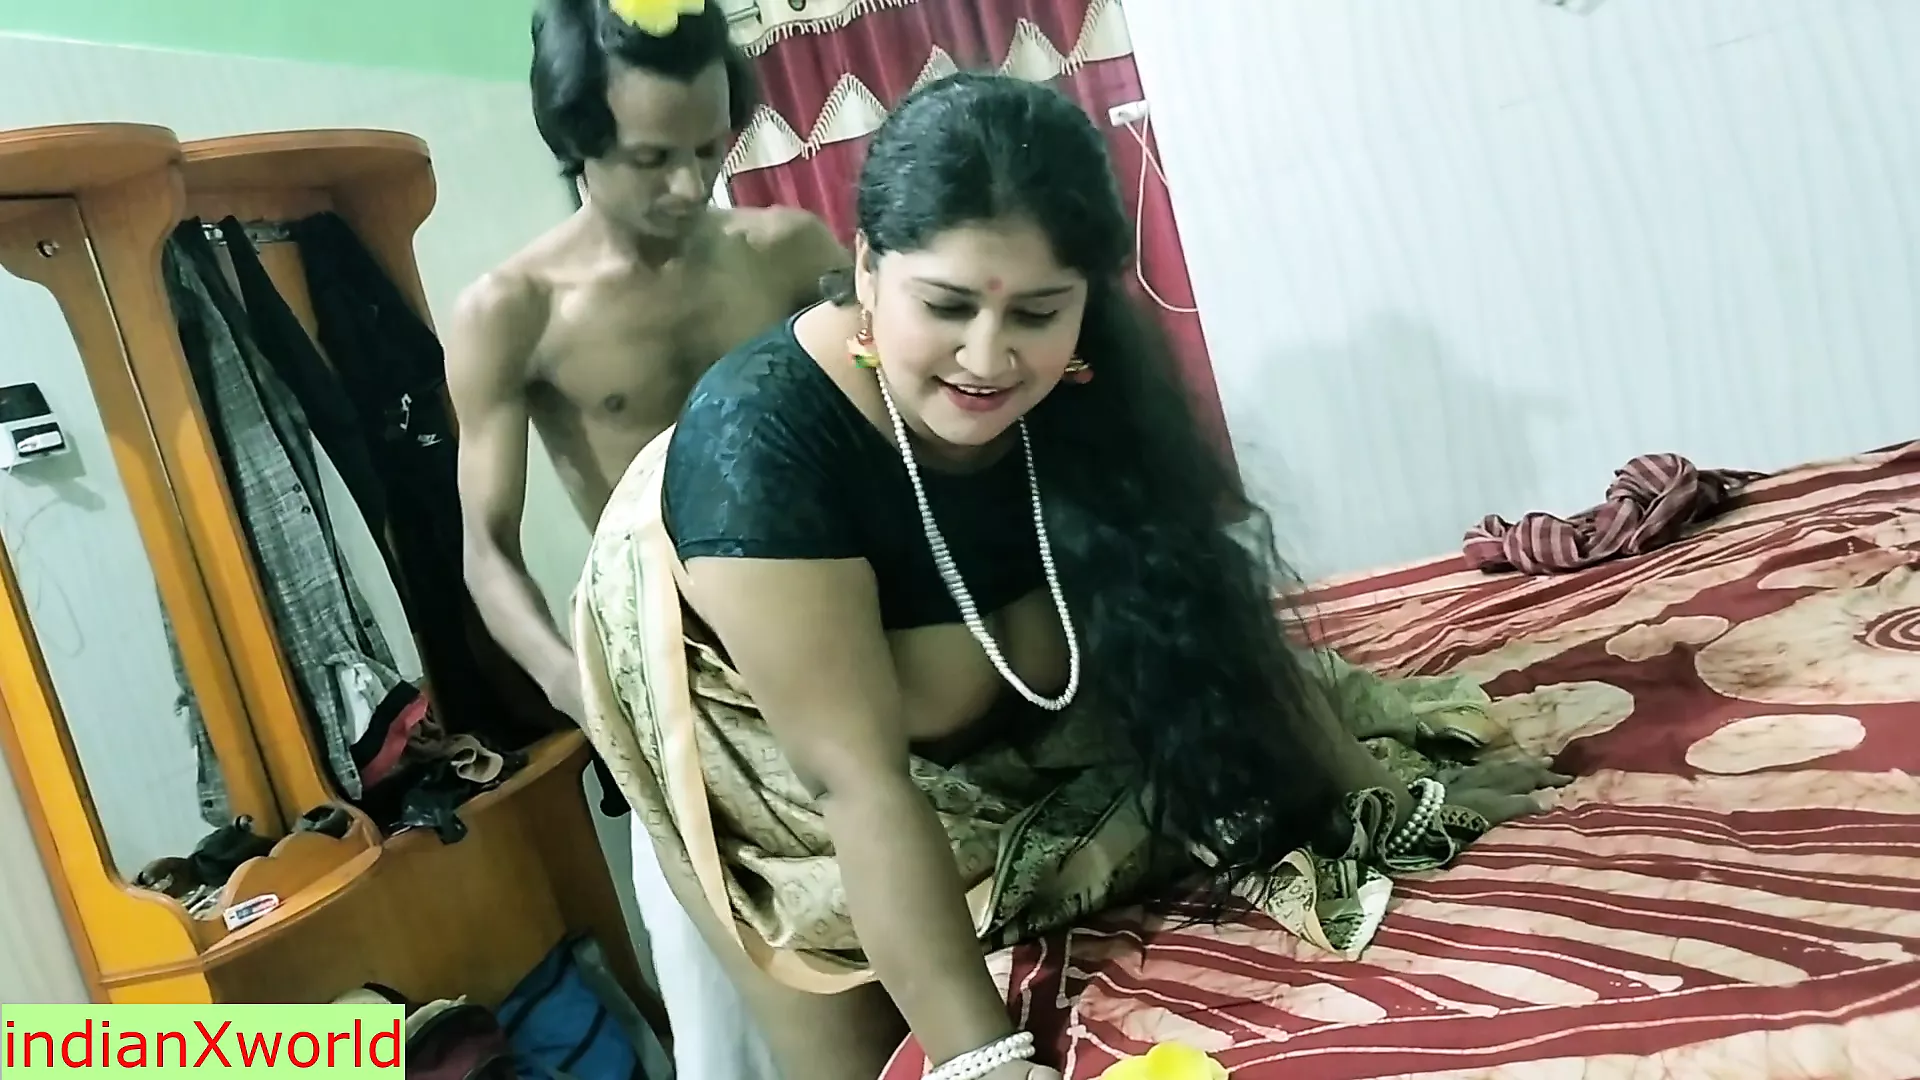 Mooie grote borsten bhabhi geweldige xxx hardcore seks !! hete vrouw seks xHamster foto